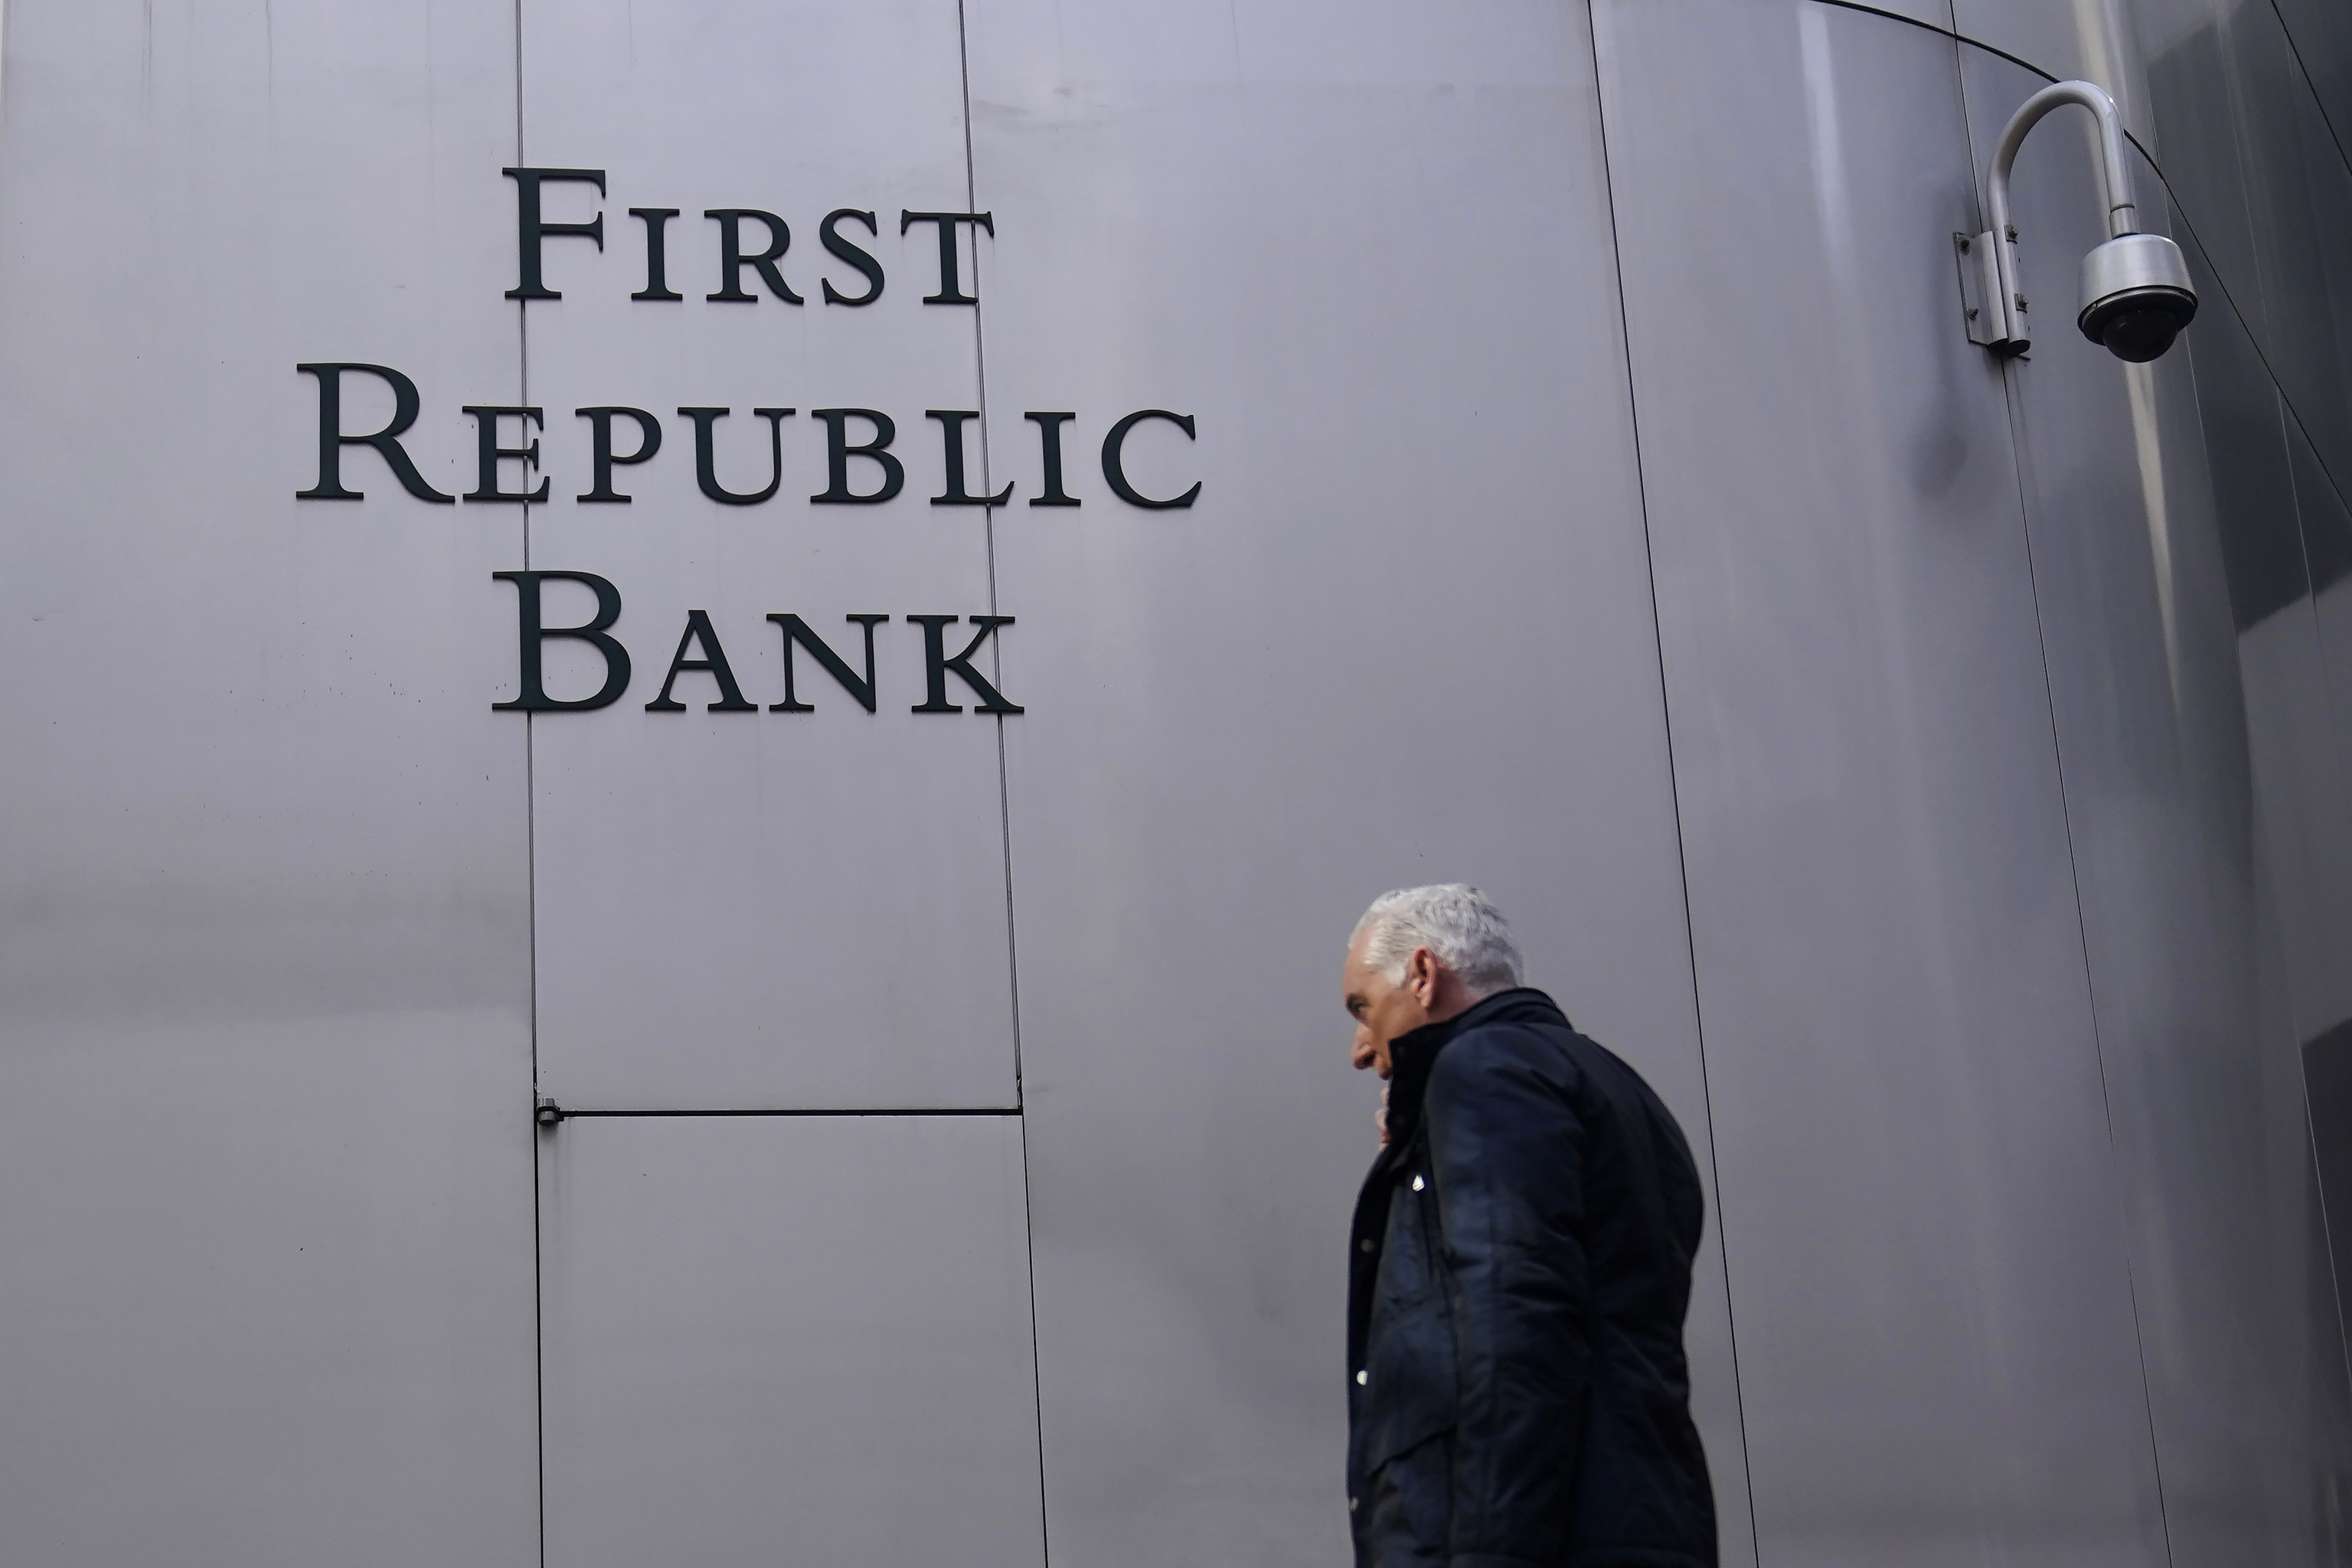 EEUU subasta su décimo cuatro banco, First Republic, para evitar tener que intervenirlo